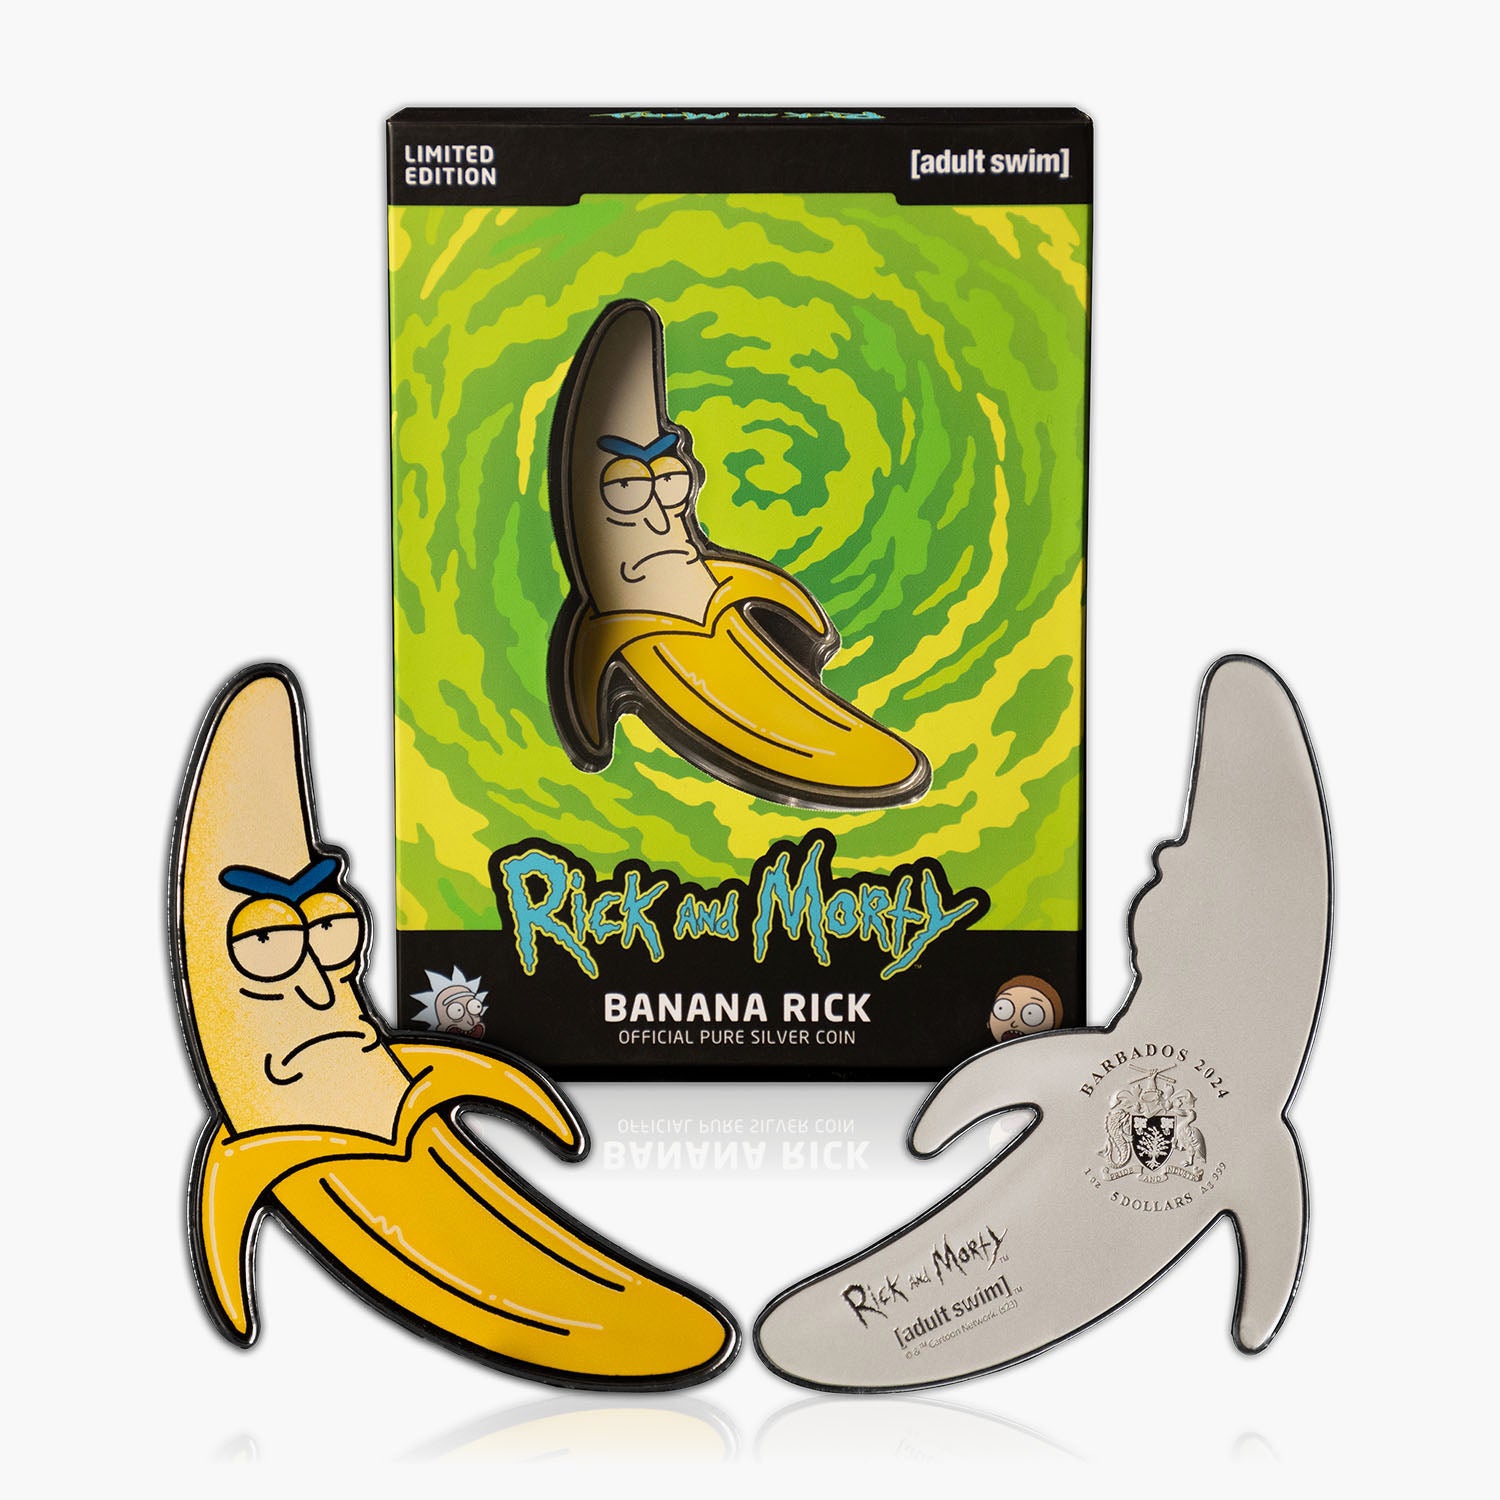 Rick and Morty - Banana Rick Solid Silver 1oz coin